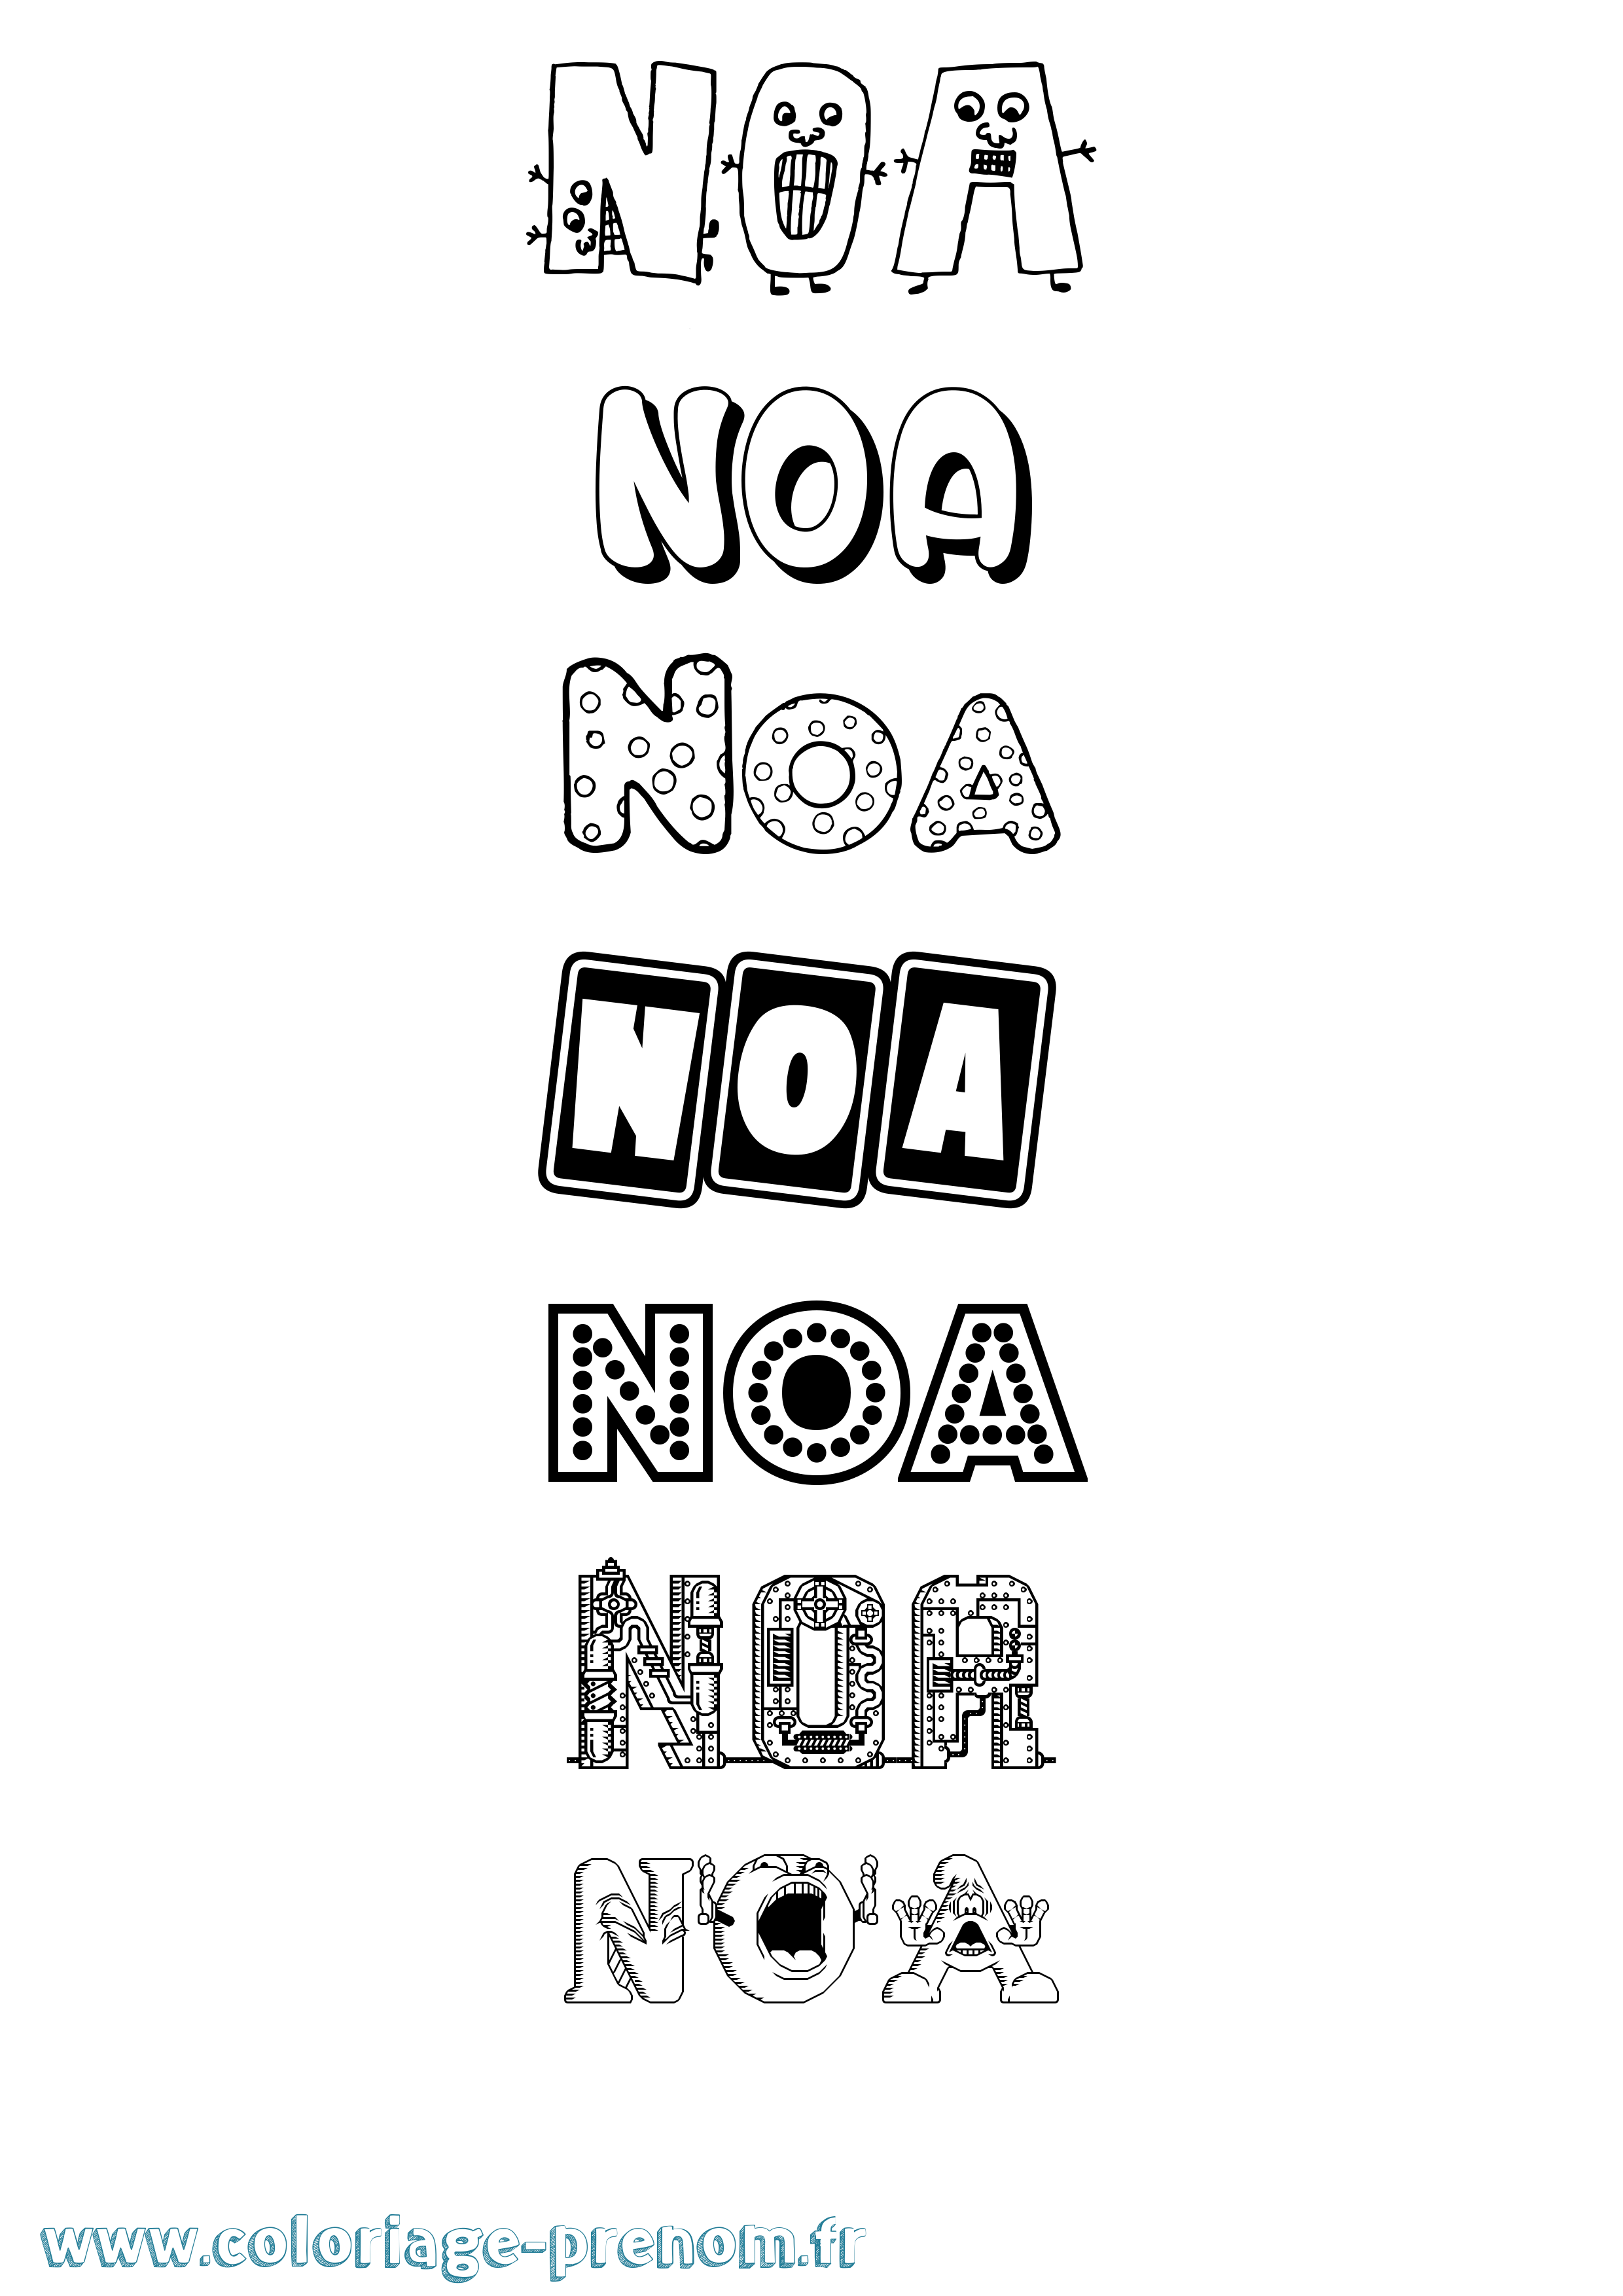 Coloriage prénom Noa Fun